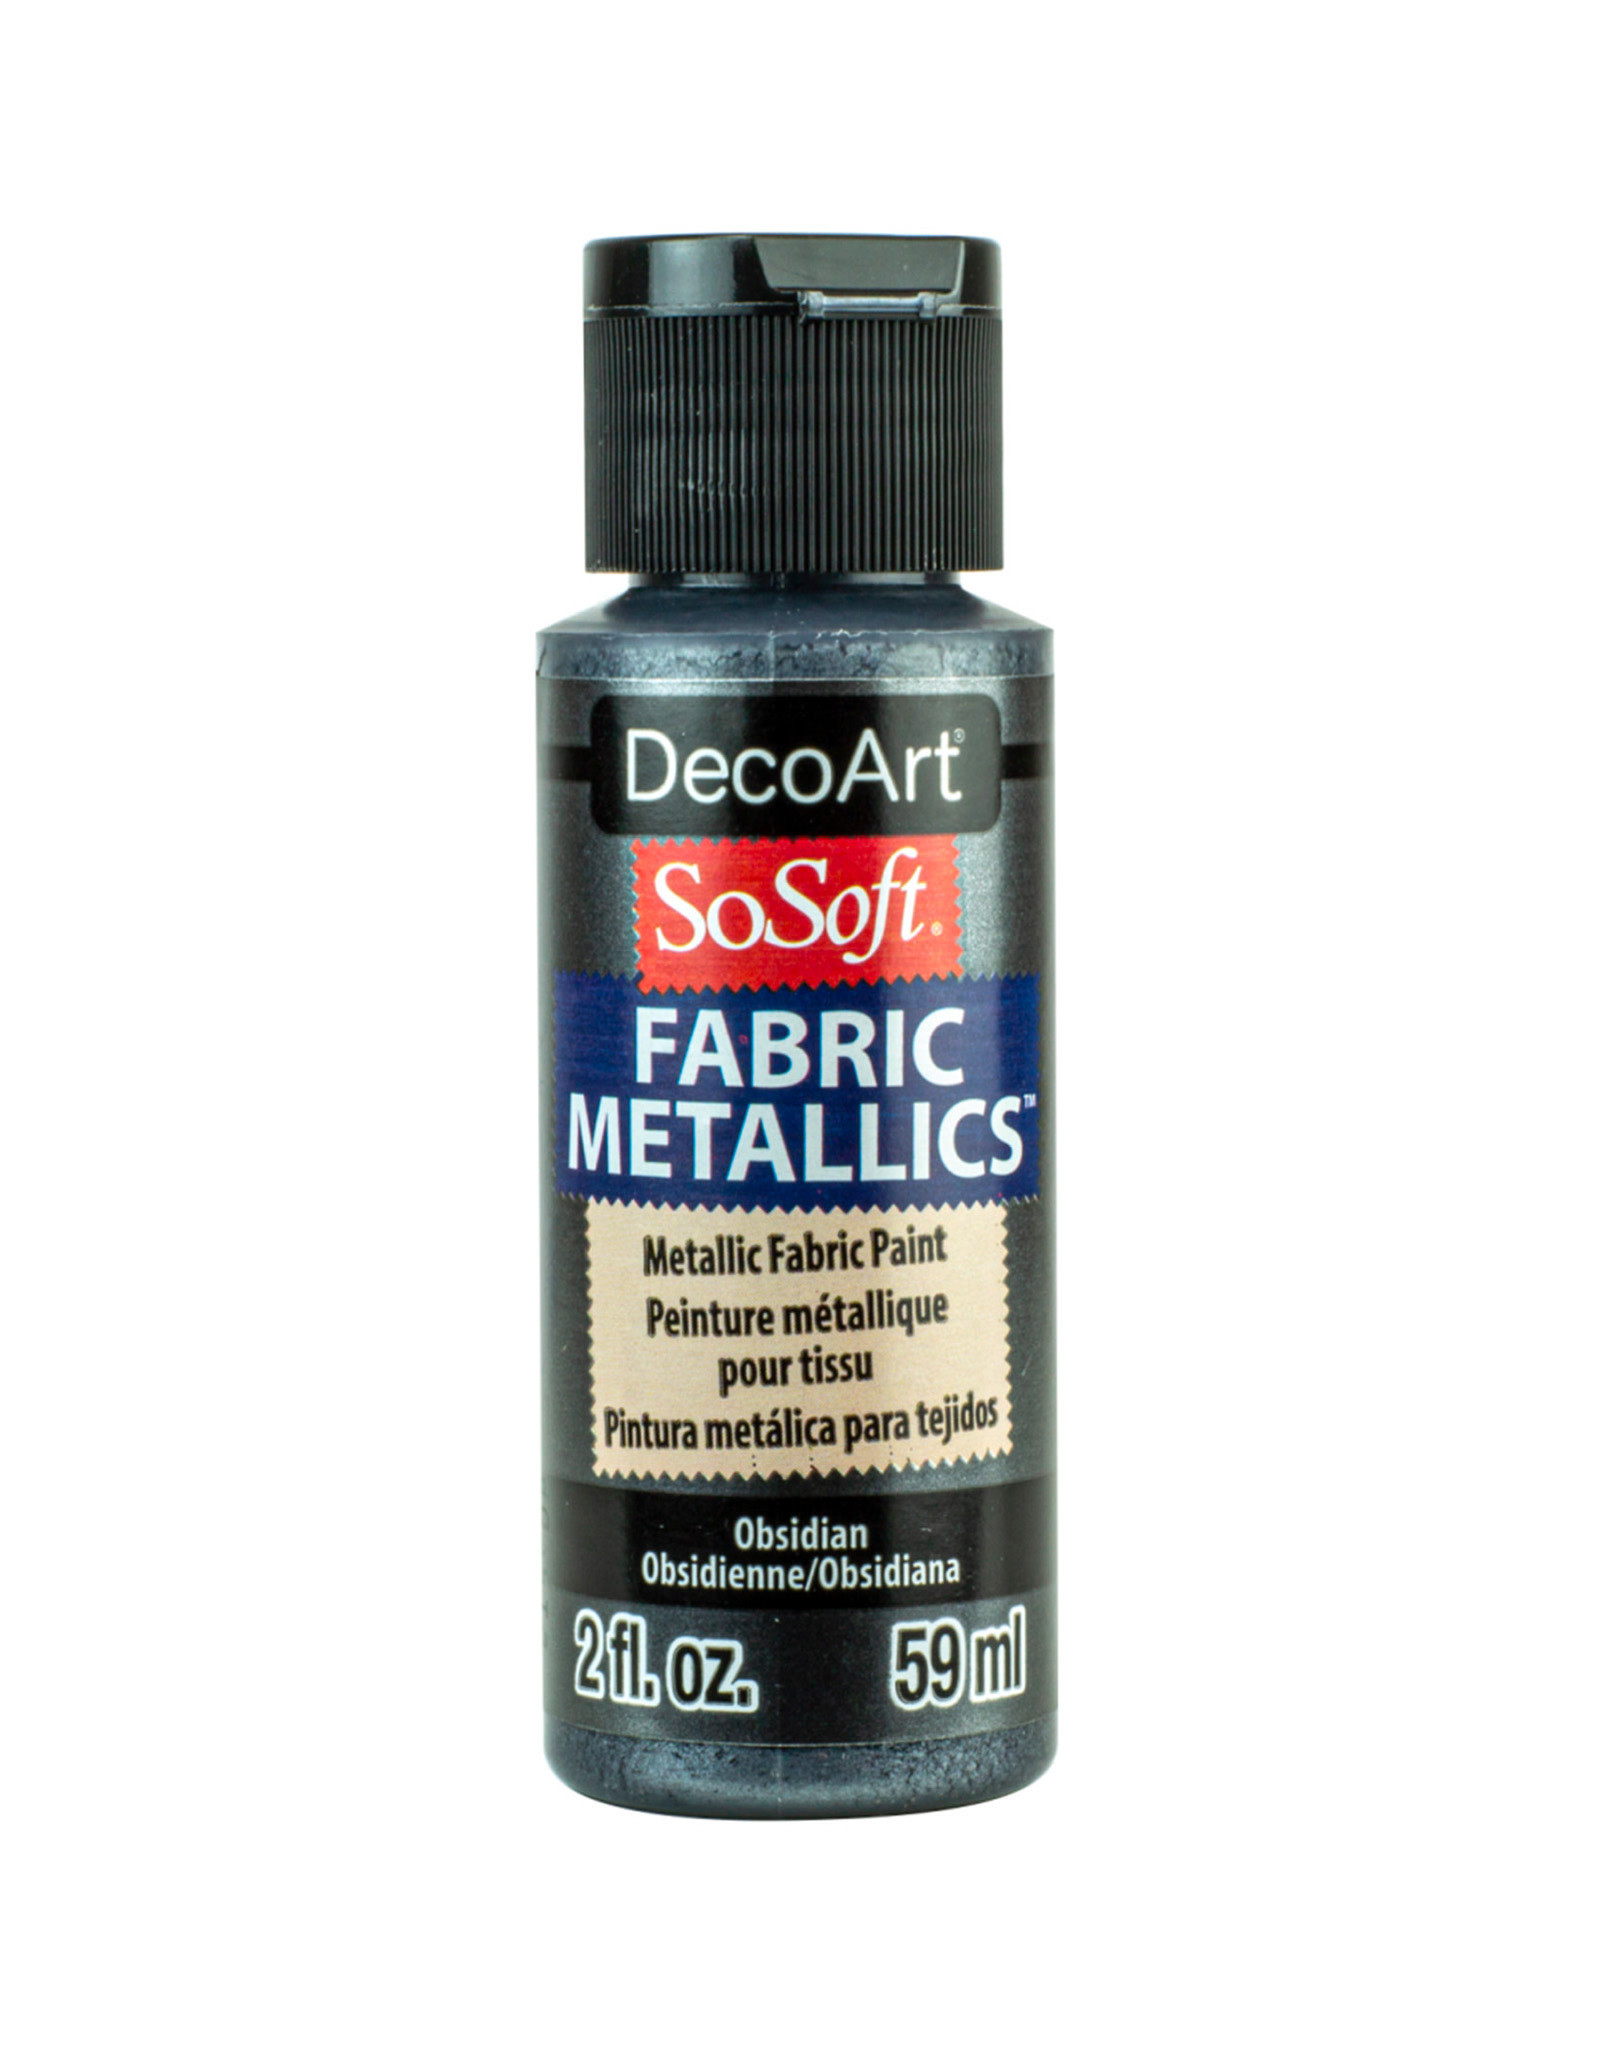 DecoArt DecoArt SoSoft Fabric Metallics, Obsidian 2oz